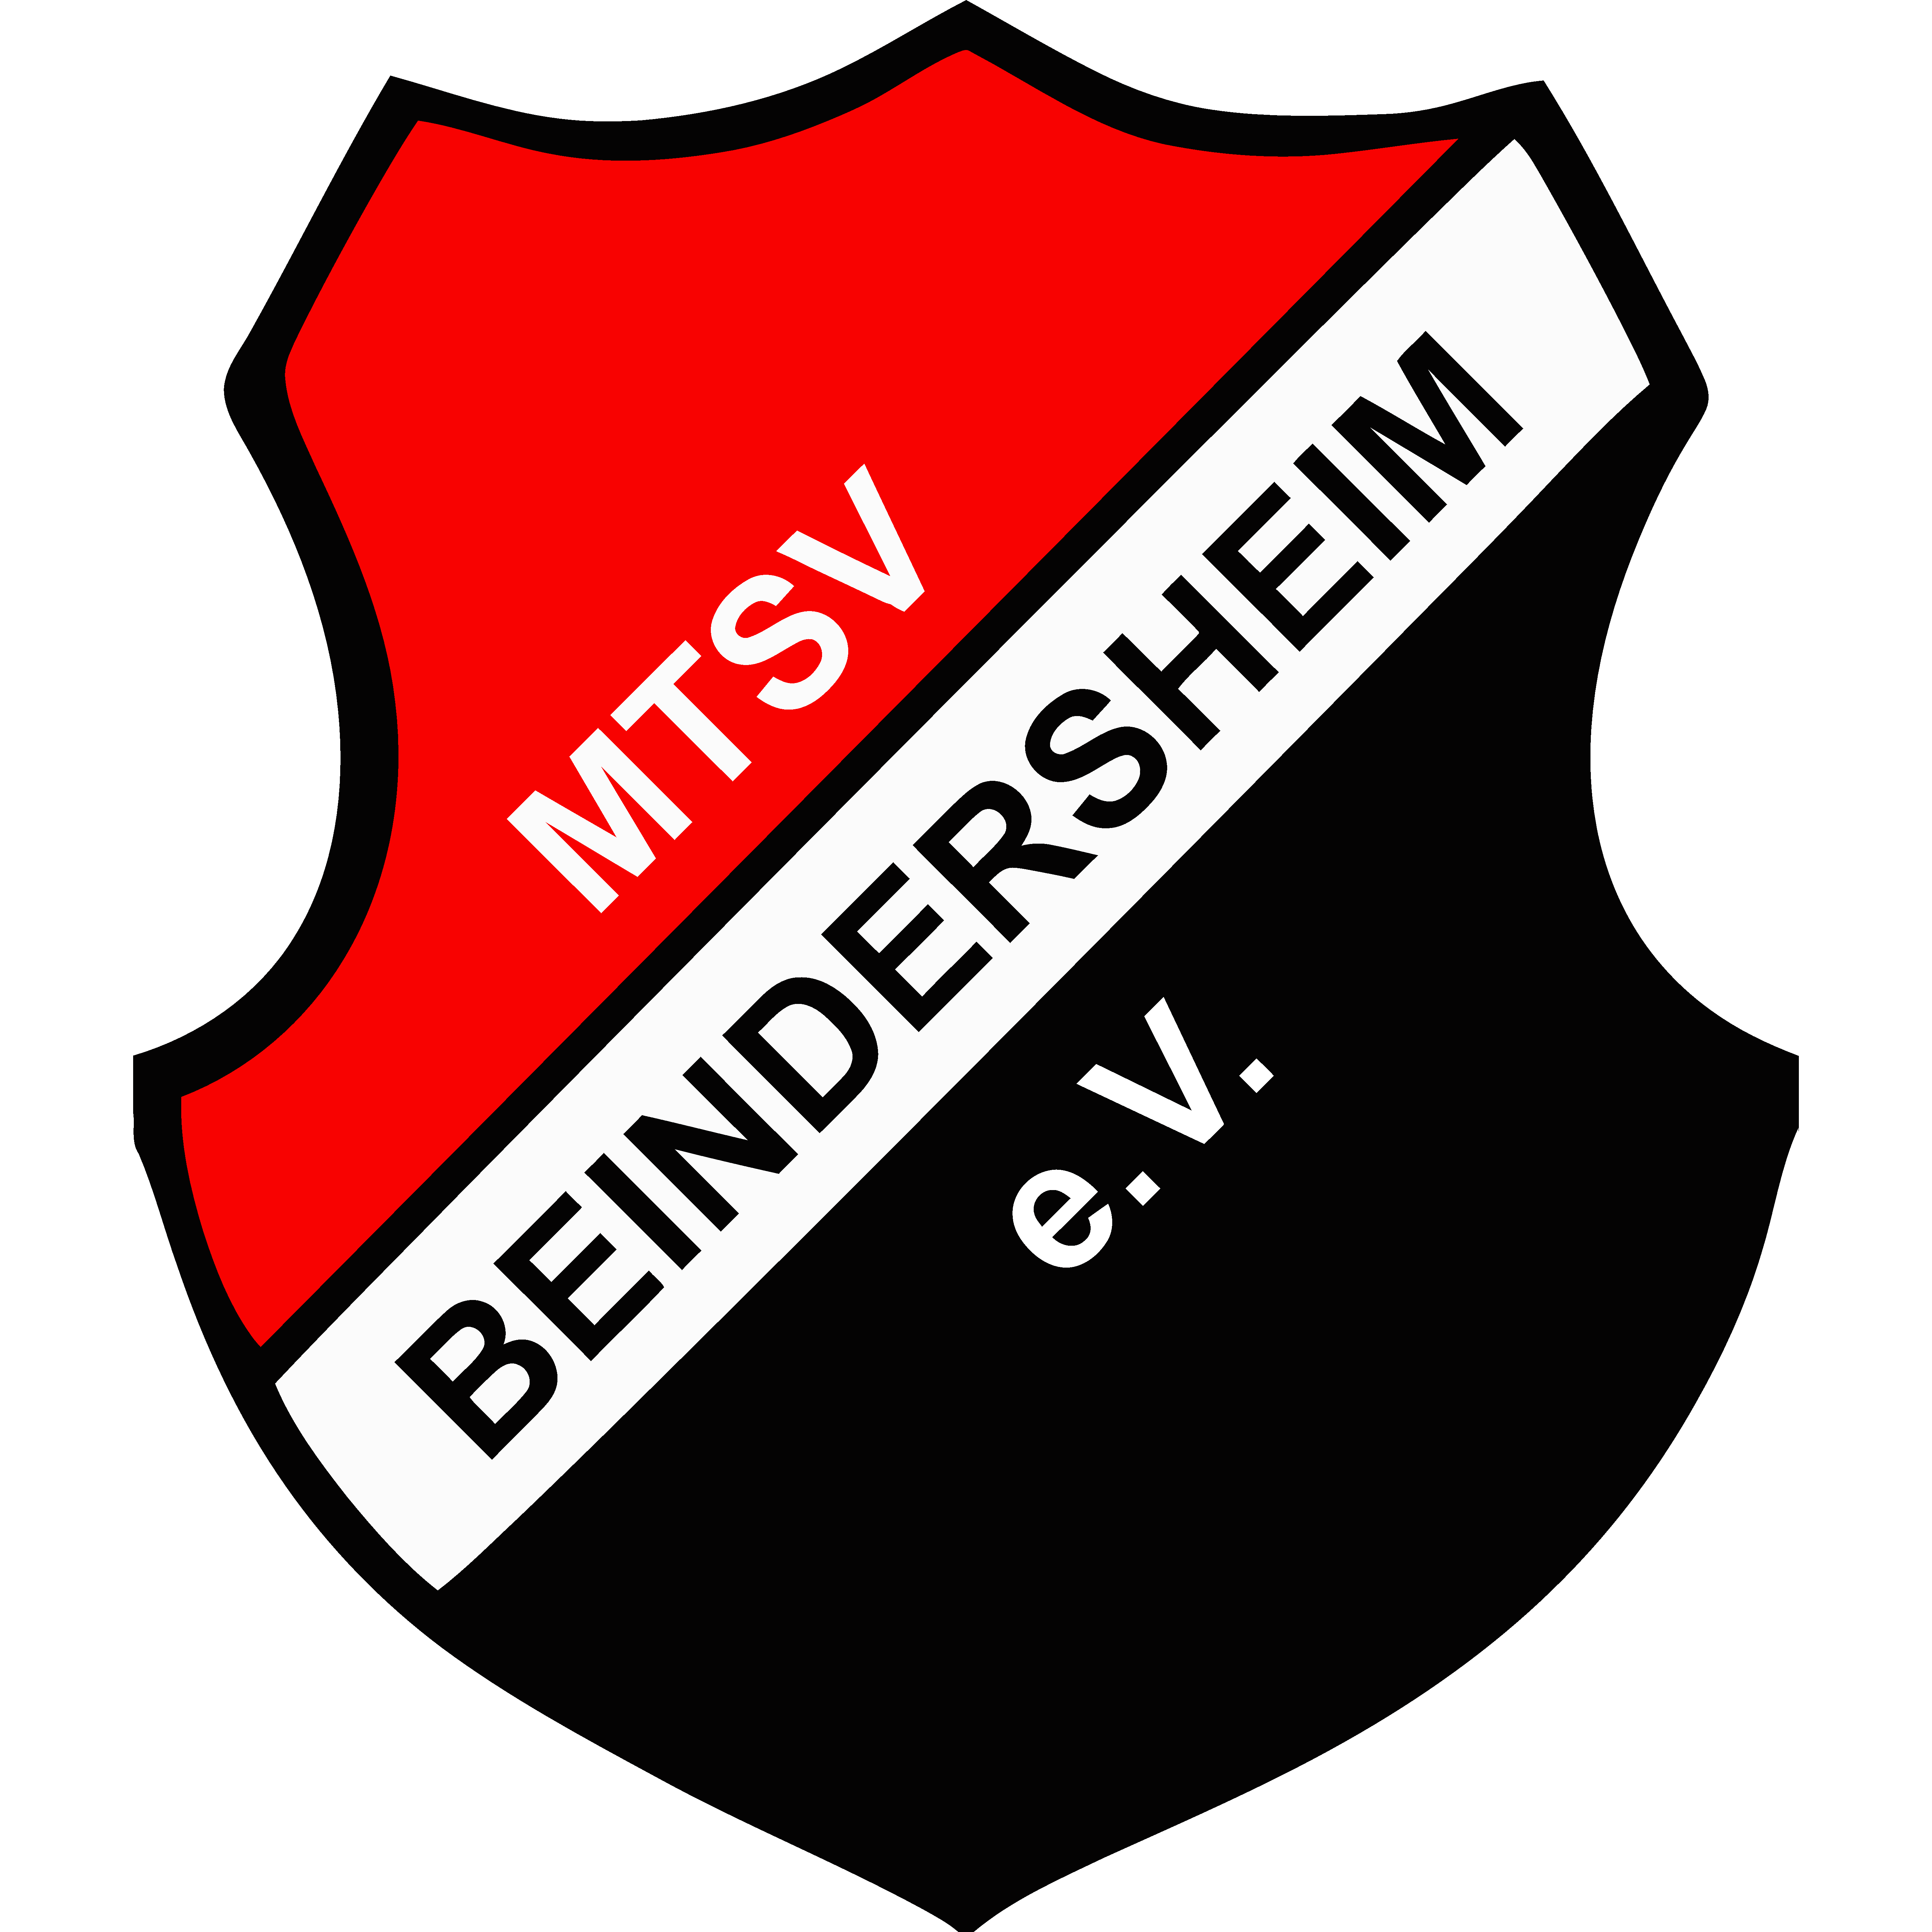 MTSV Beindersheim 1909